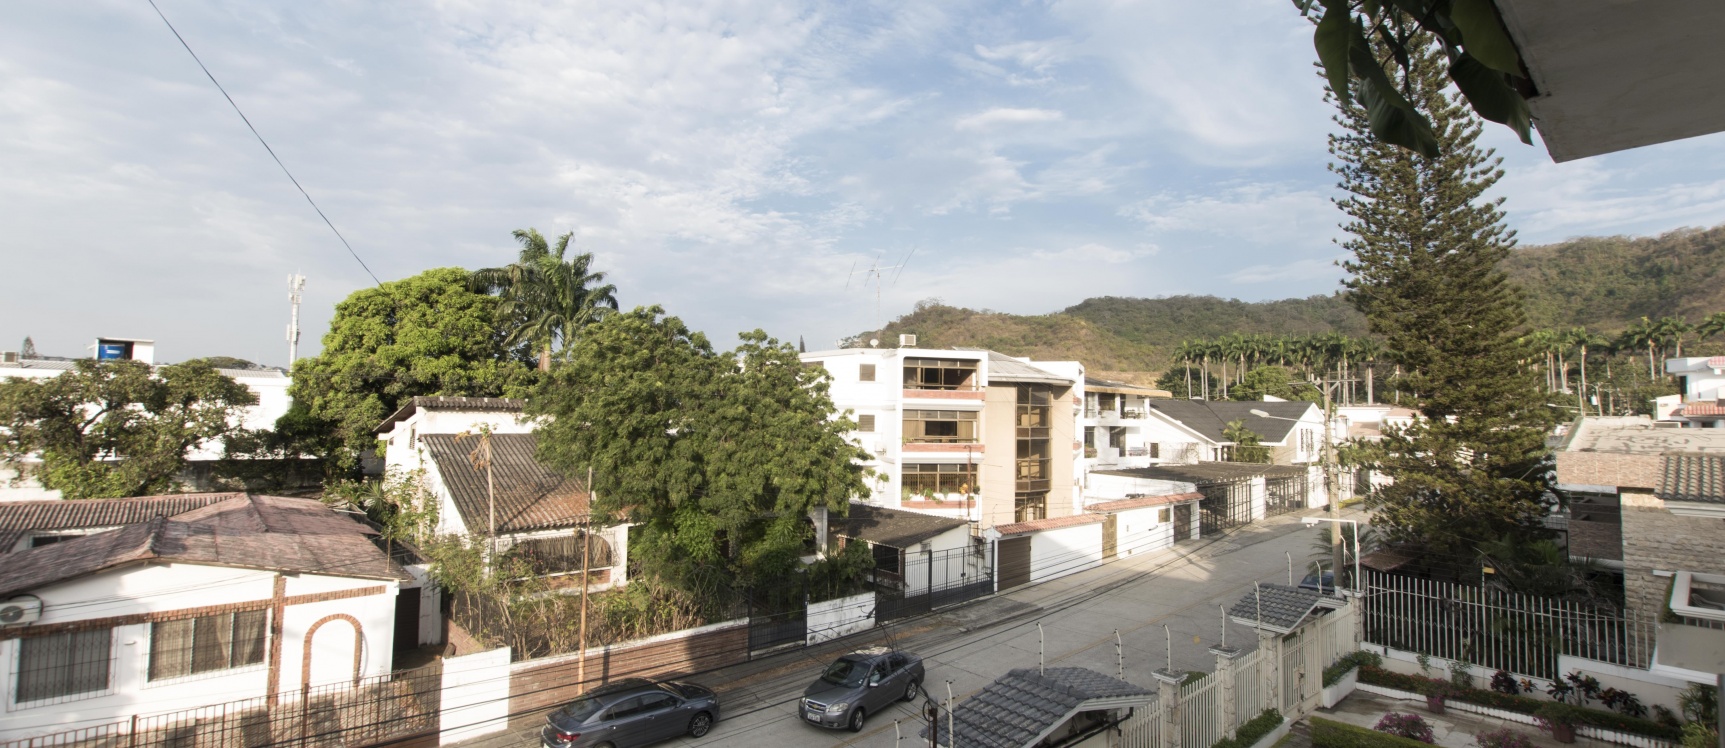 GeoBienes - Departamento en venta ubicado en ceibos - Plusvalia Guayaquil Casas de venta y alquiler Inmobiliaria Ecuador